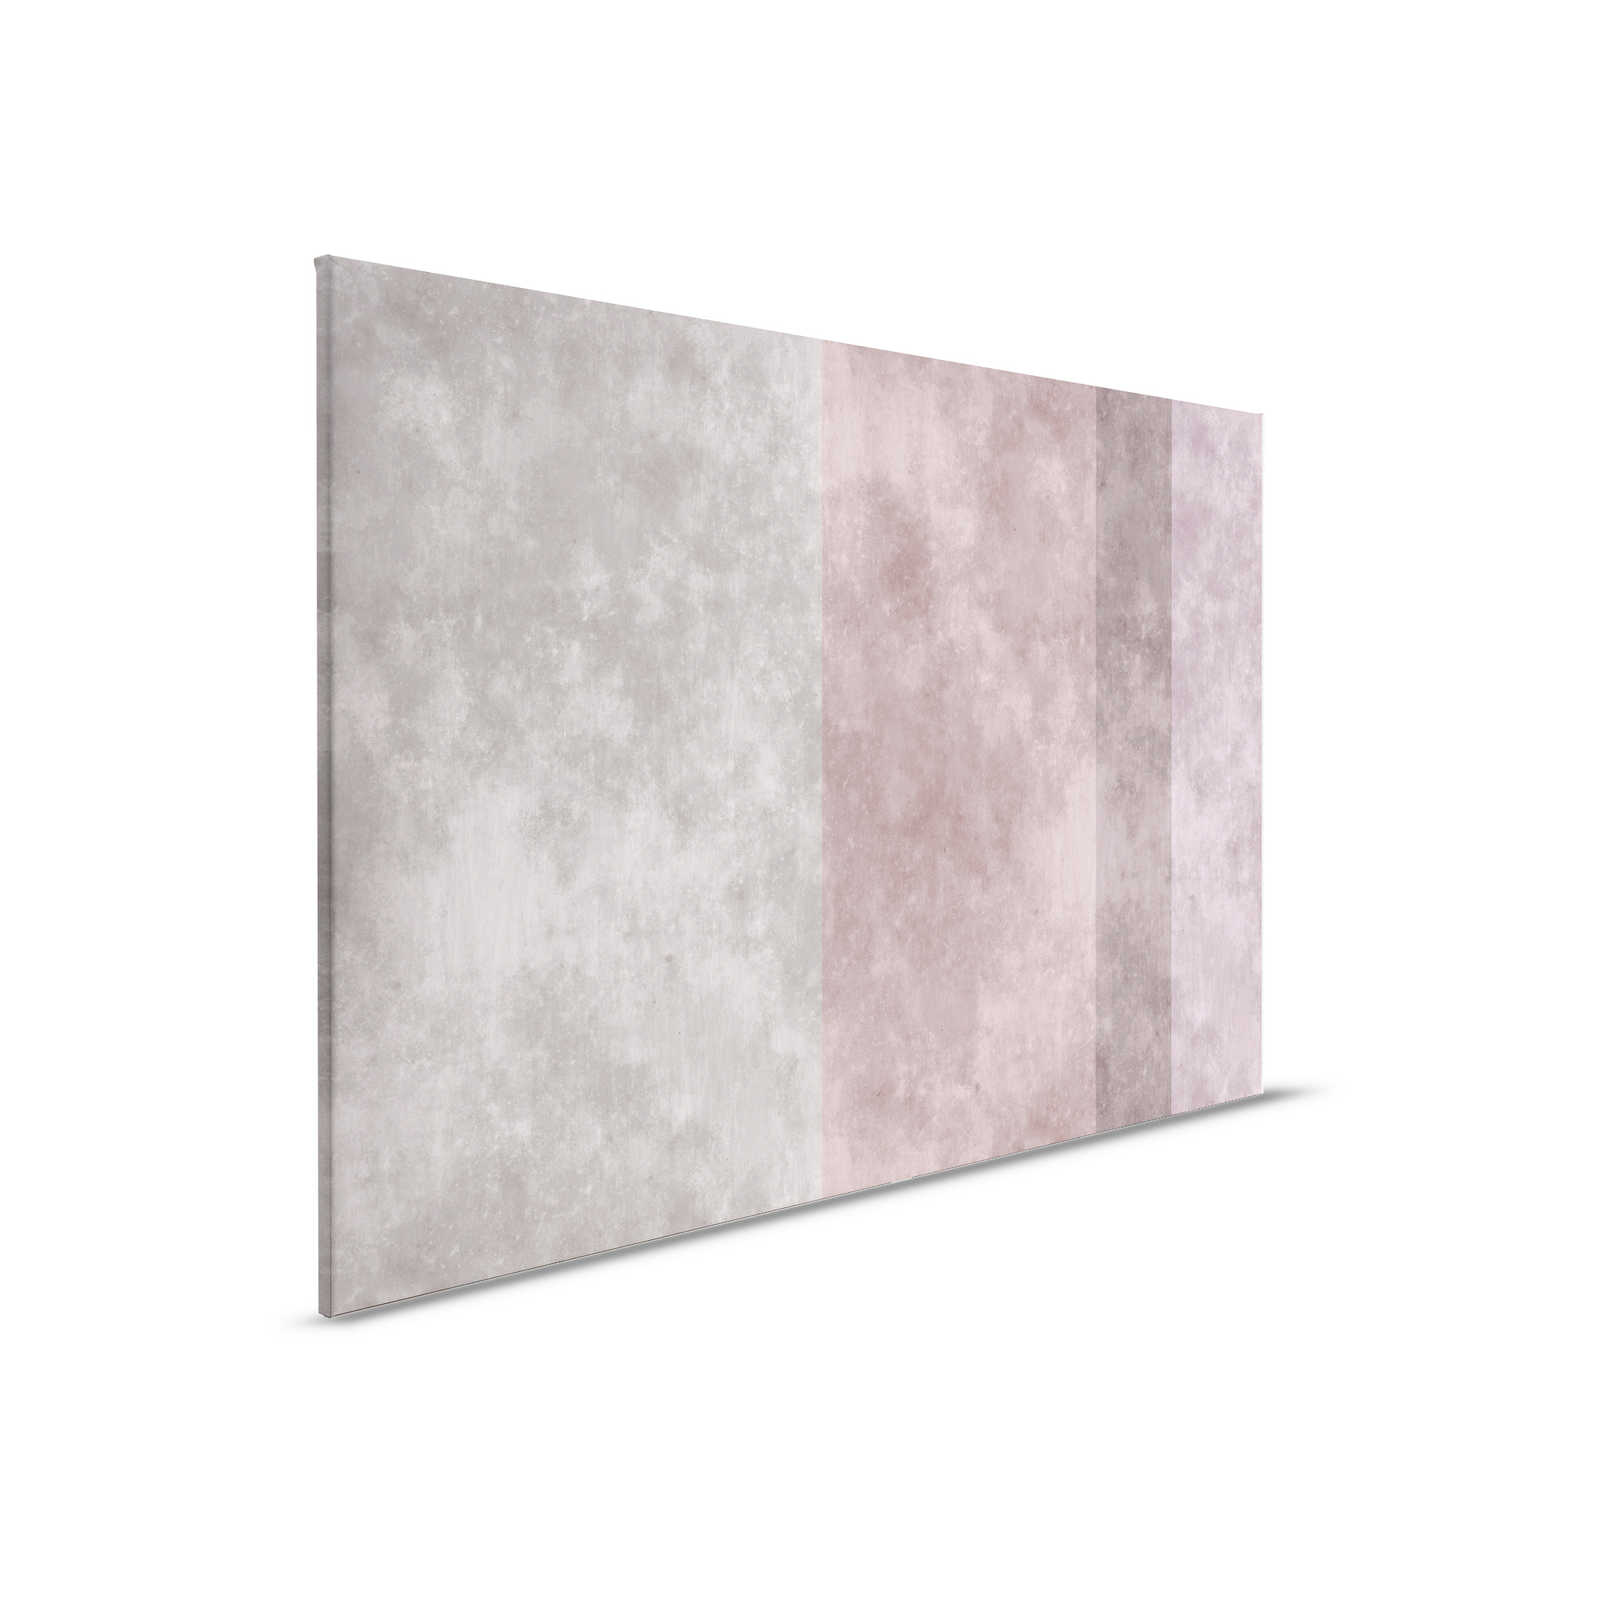 Betonlook canvas schilderij met strepen | grijs, roze - 0,90 m x 0,60 m
